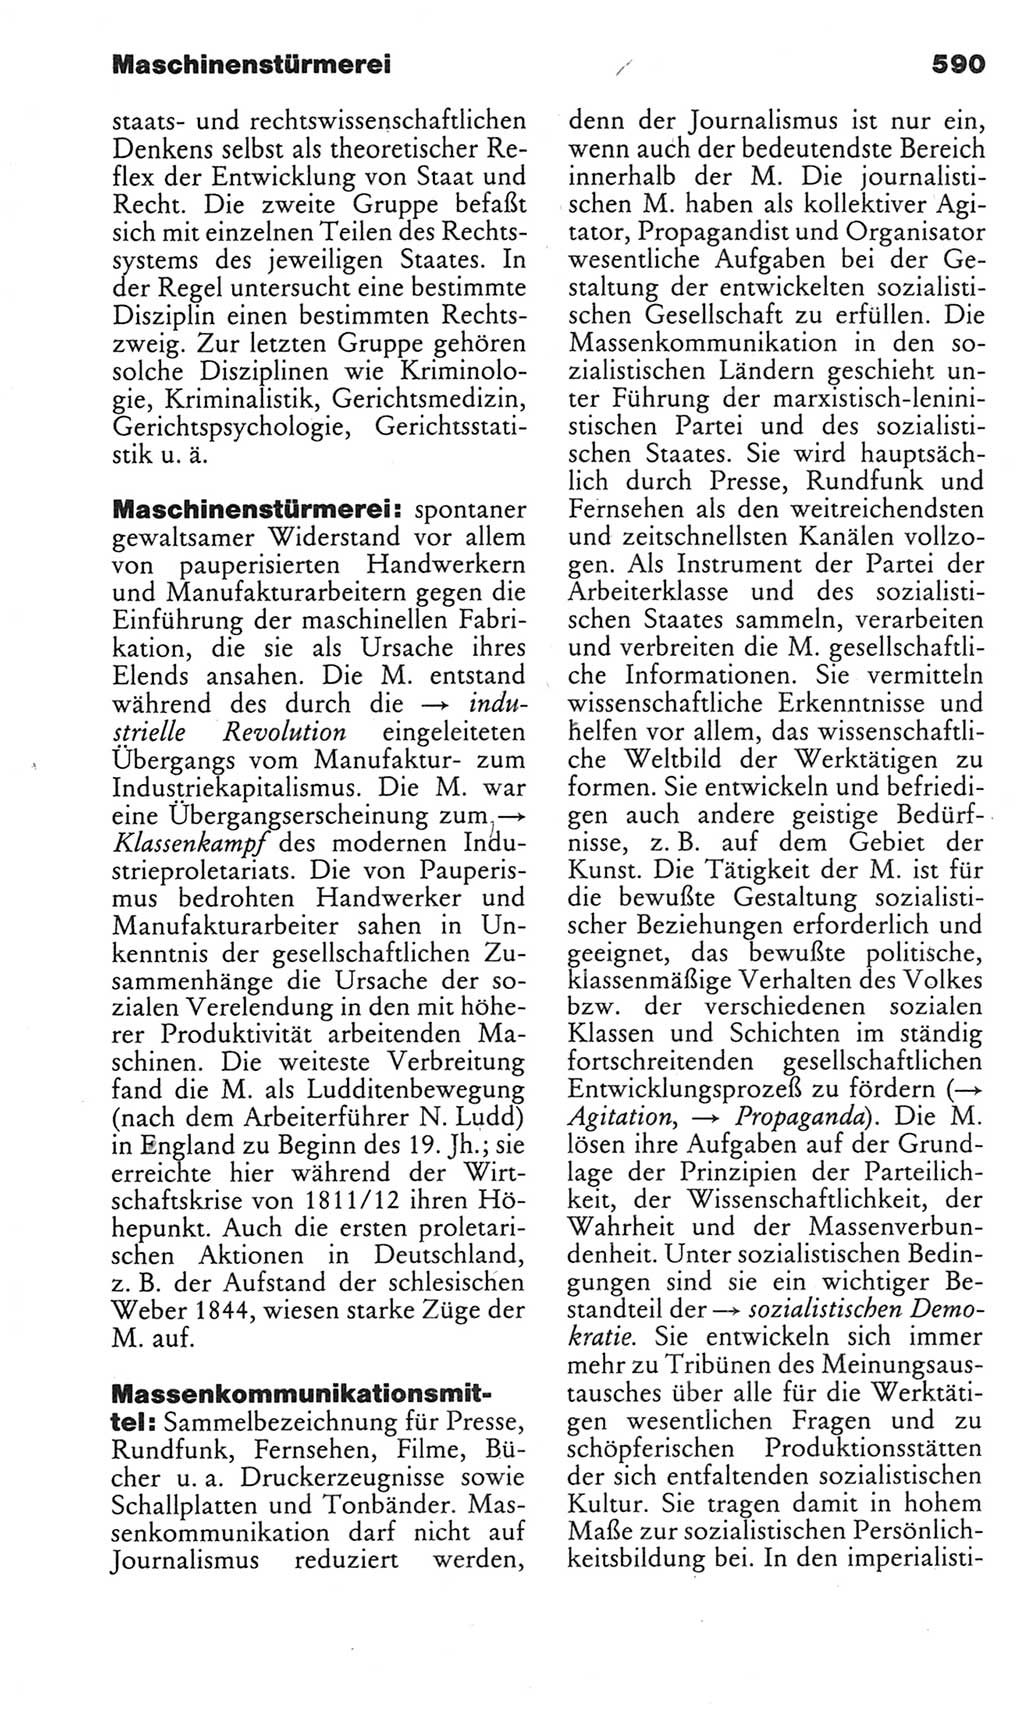 Kleines politisches Wörterbuch [Deutsche Demokratische Republik (DDR)] 1983, Seite 590 (Kl. pol. Wb. DDR 1983, S. 590)